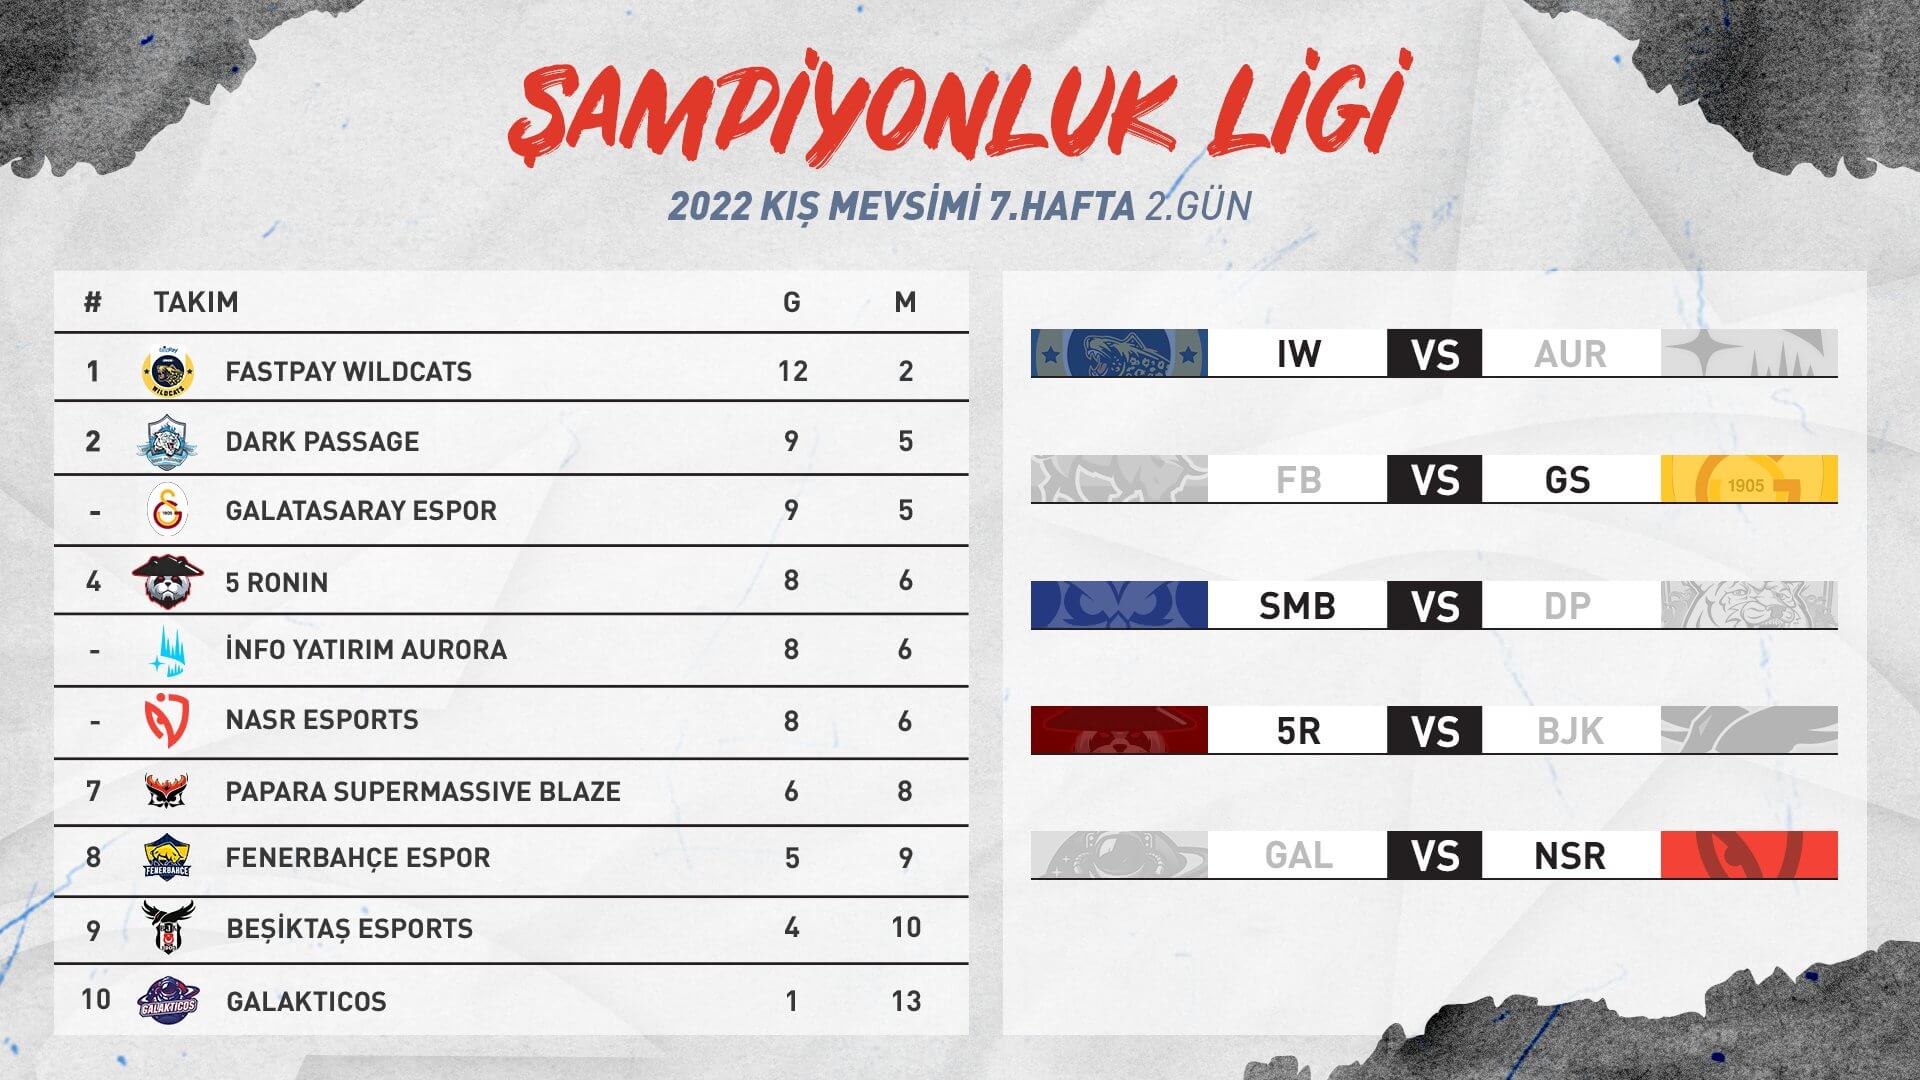 Derbinin galibi Galatasaray! Şampiyonluk Ligi 2022 Kış Mevsimi 7. hafta sona erdi